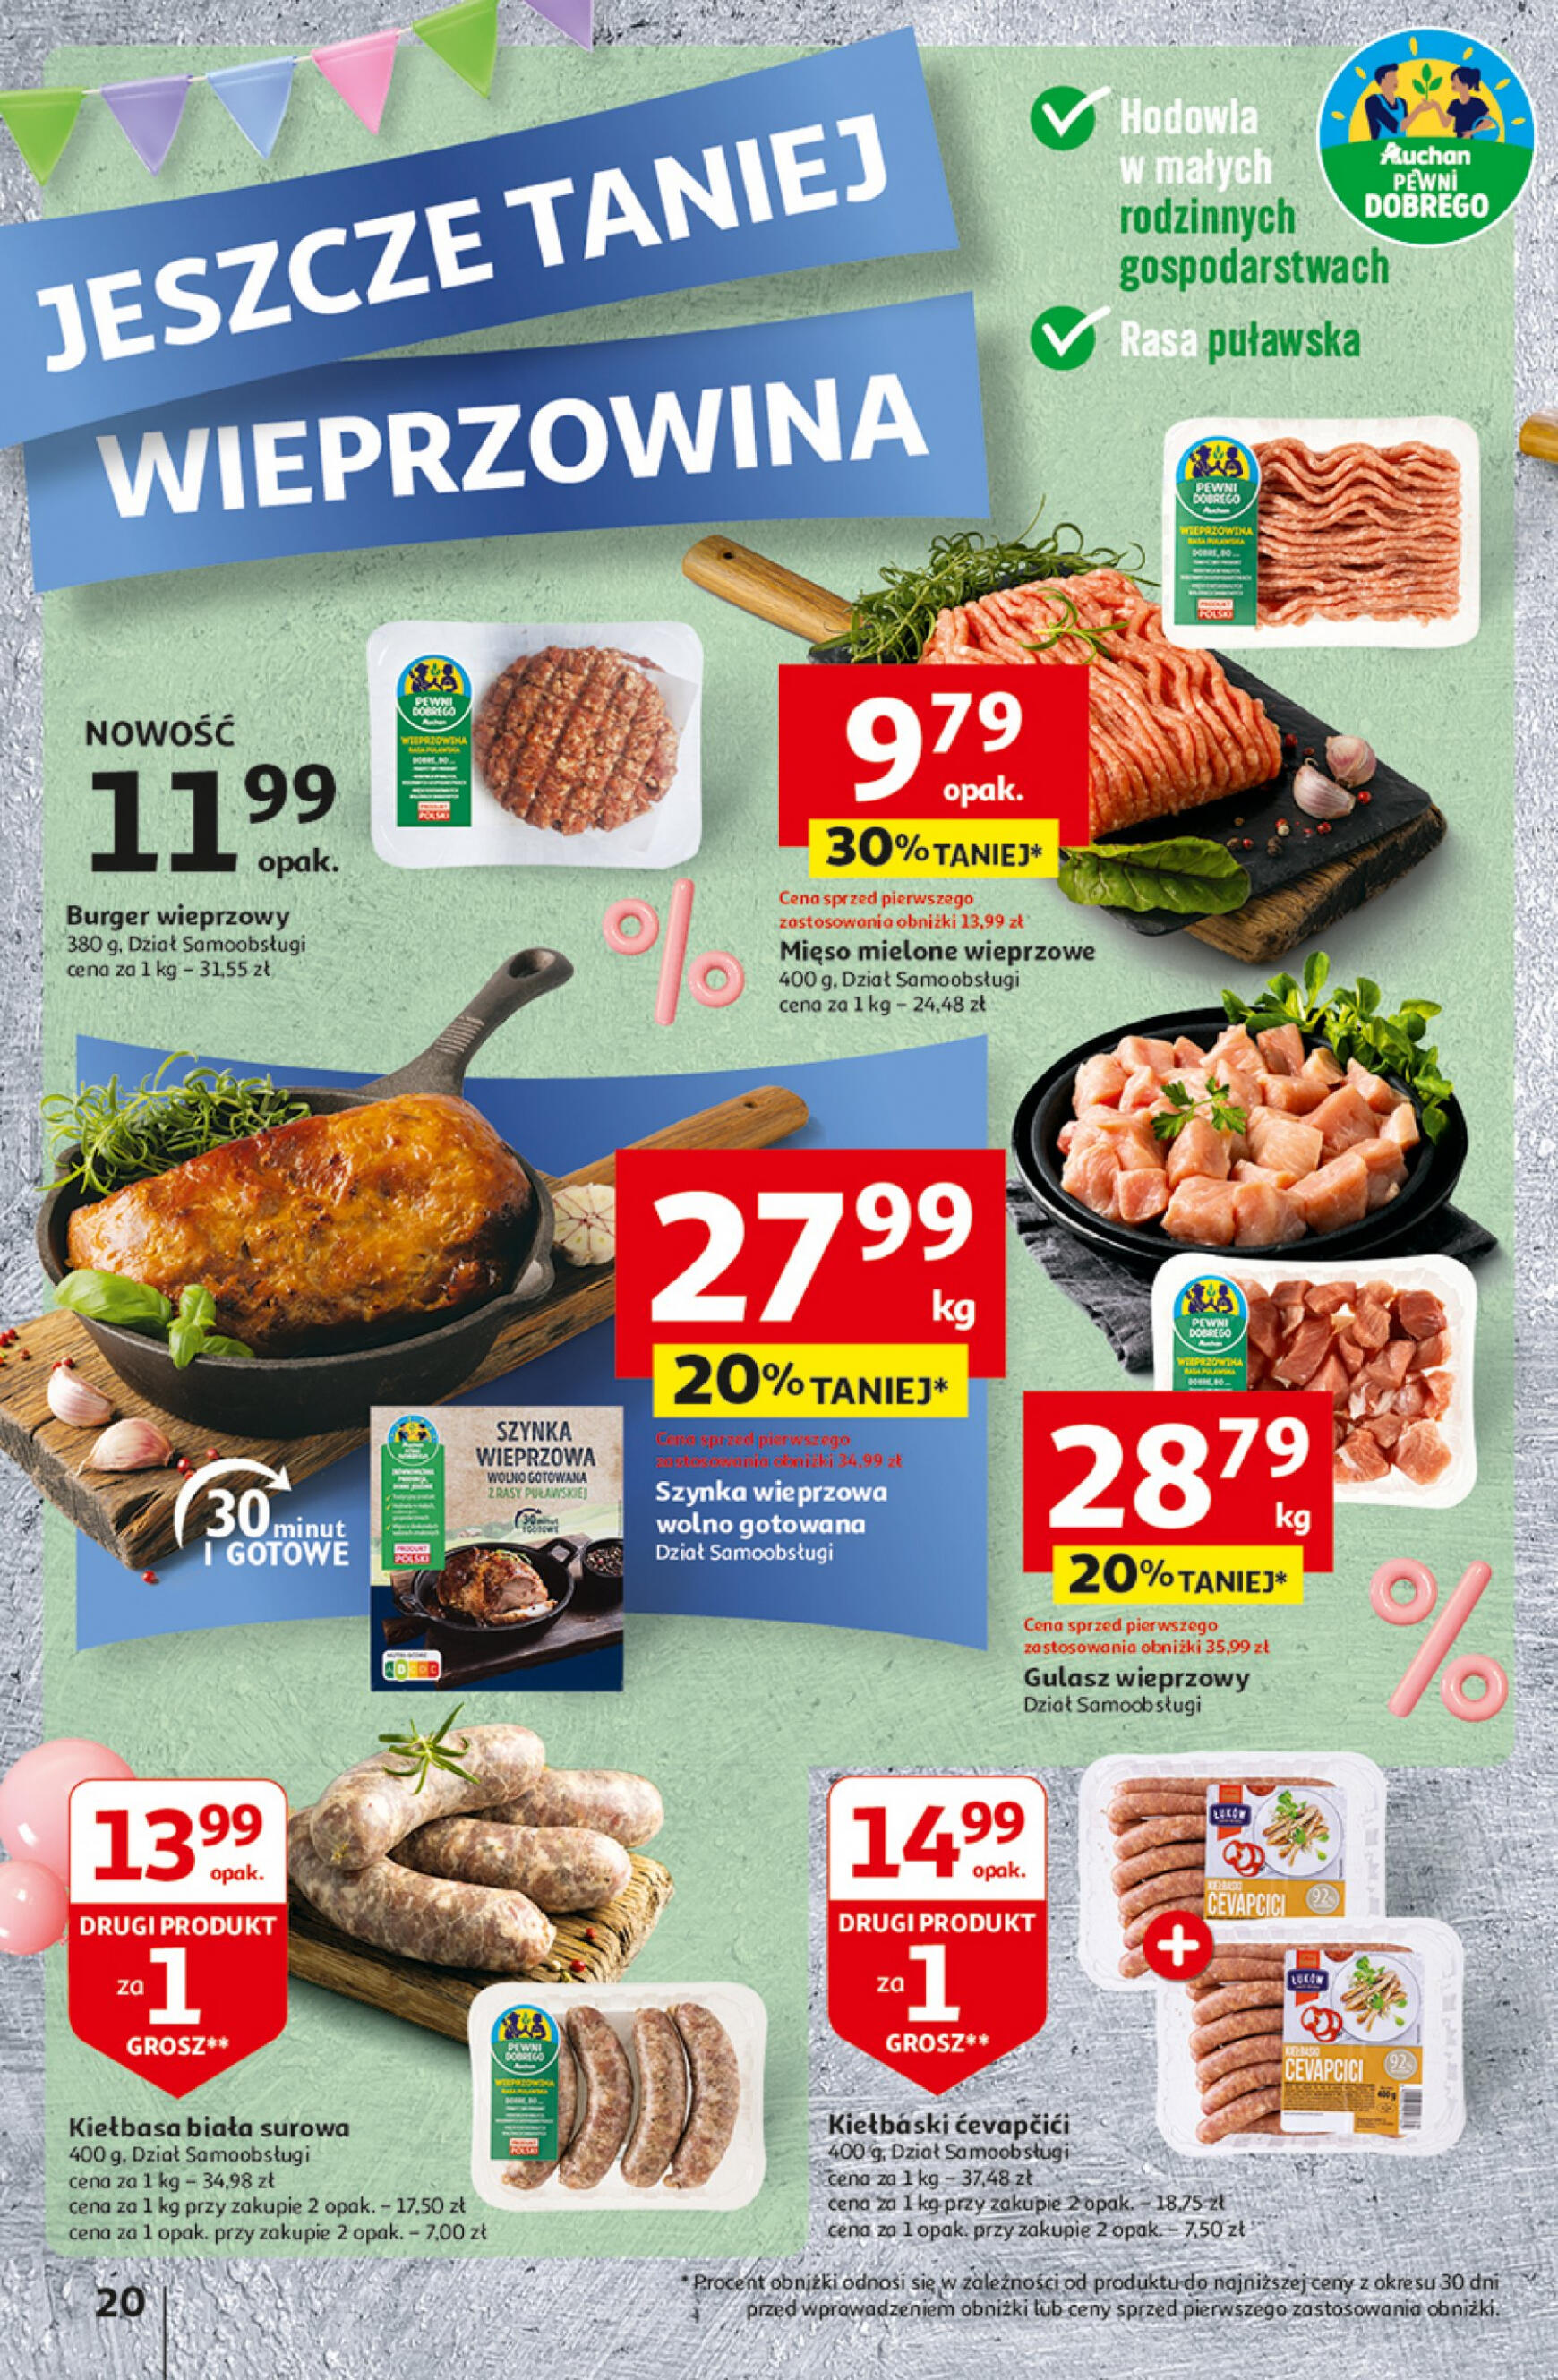 auchan - Hipermarket Auchan - Gazetka Jeszcze taniej na urodziny gazetka aktualna ważna od 25.04. - 30.04. - page: 20